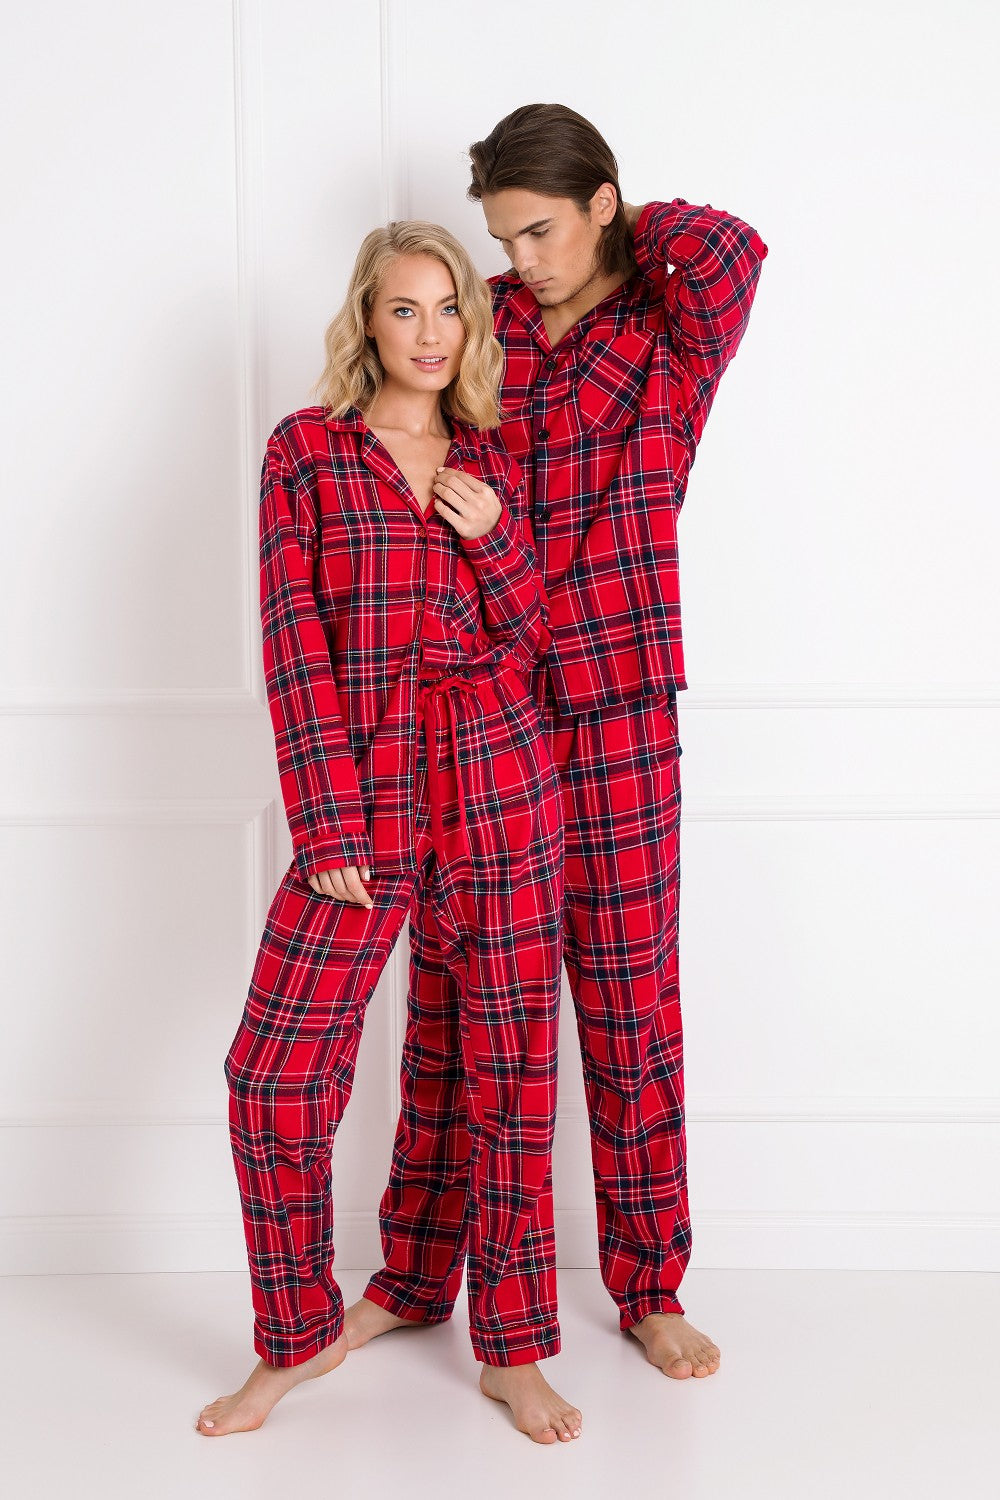 Pyjamas für die Feiertage, das gleiche für Sie und Ihn